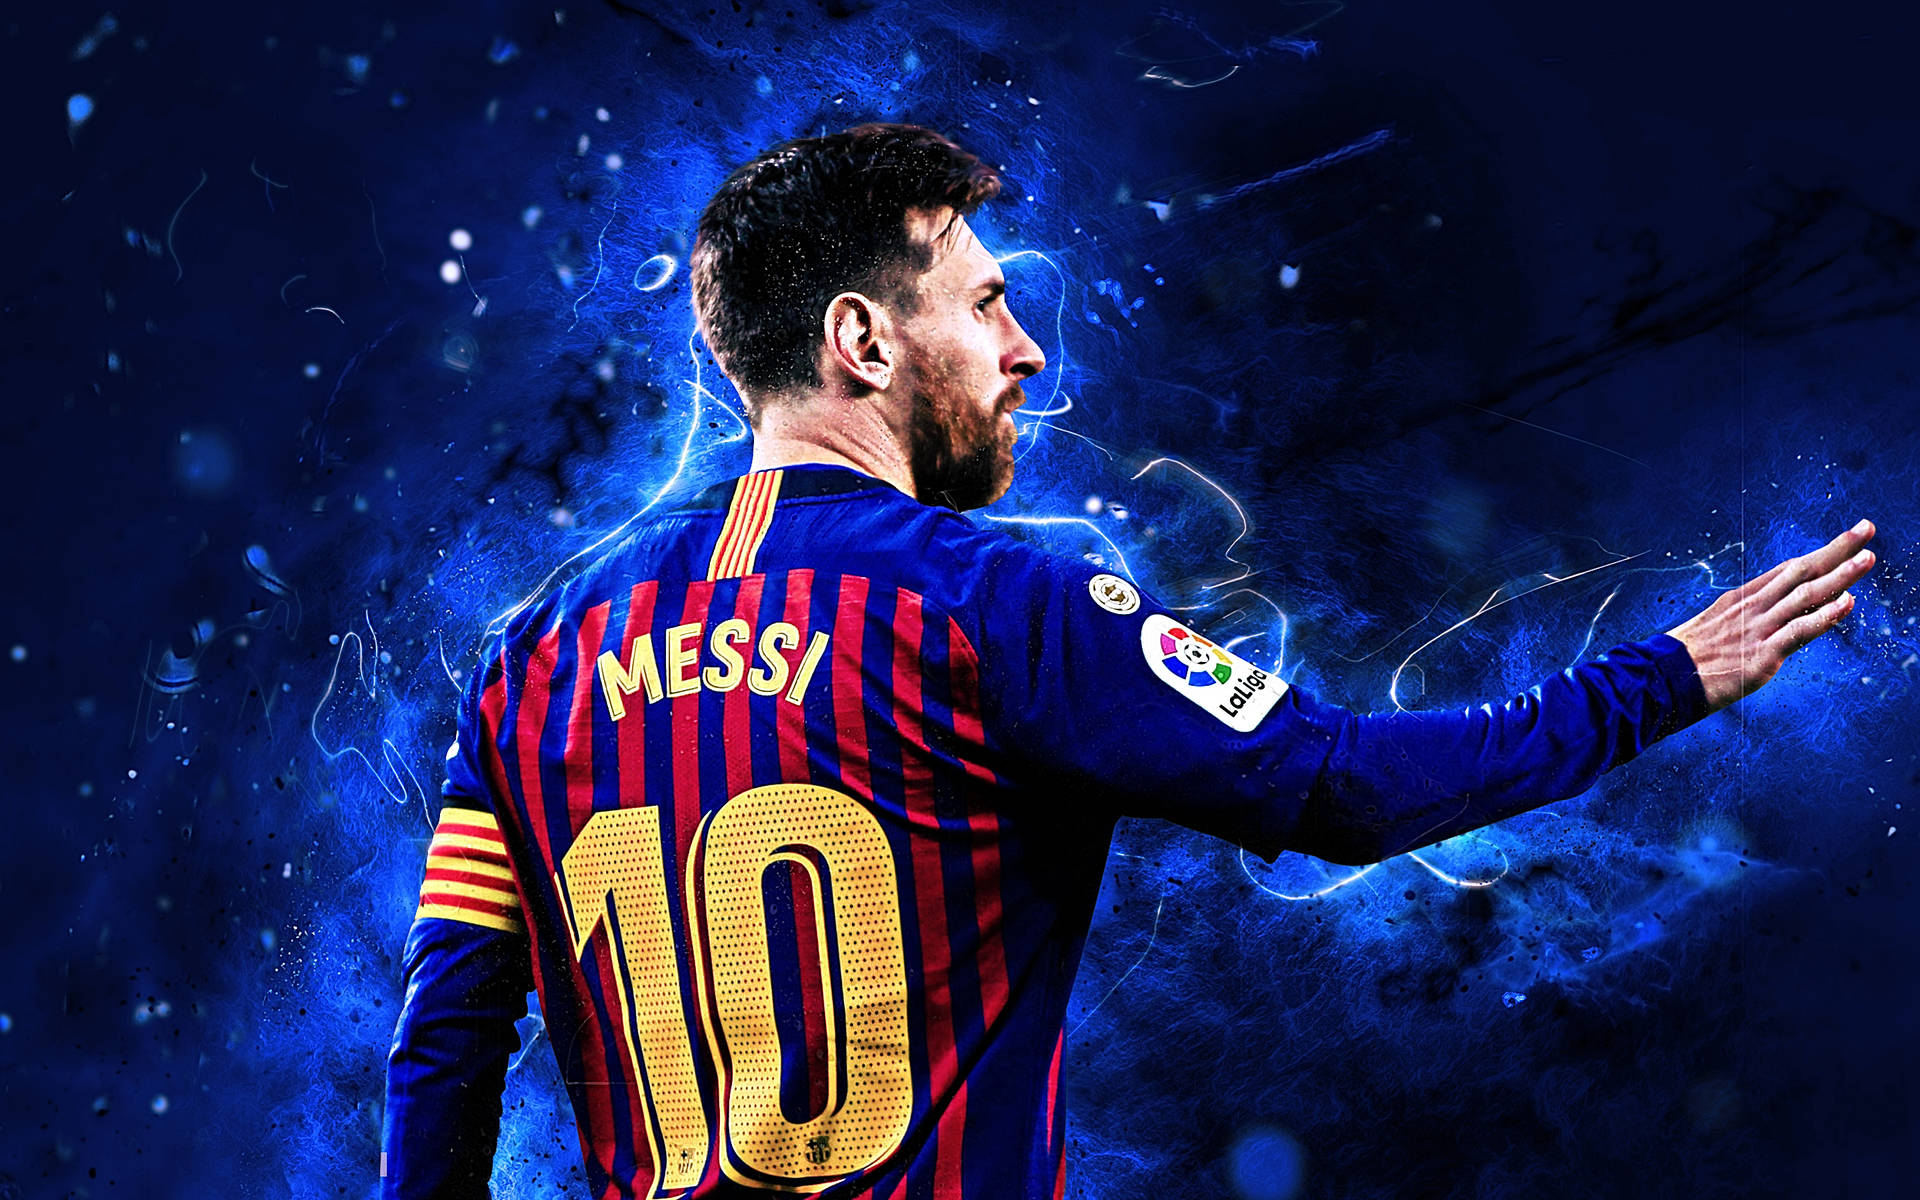 49 Messi 2020 iPhone Wallpapers  WallpaperSafari